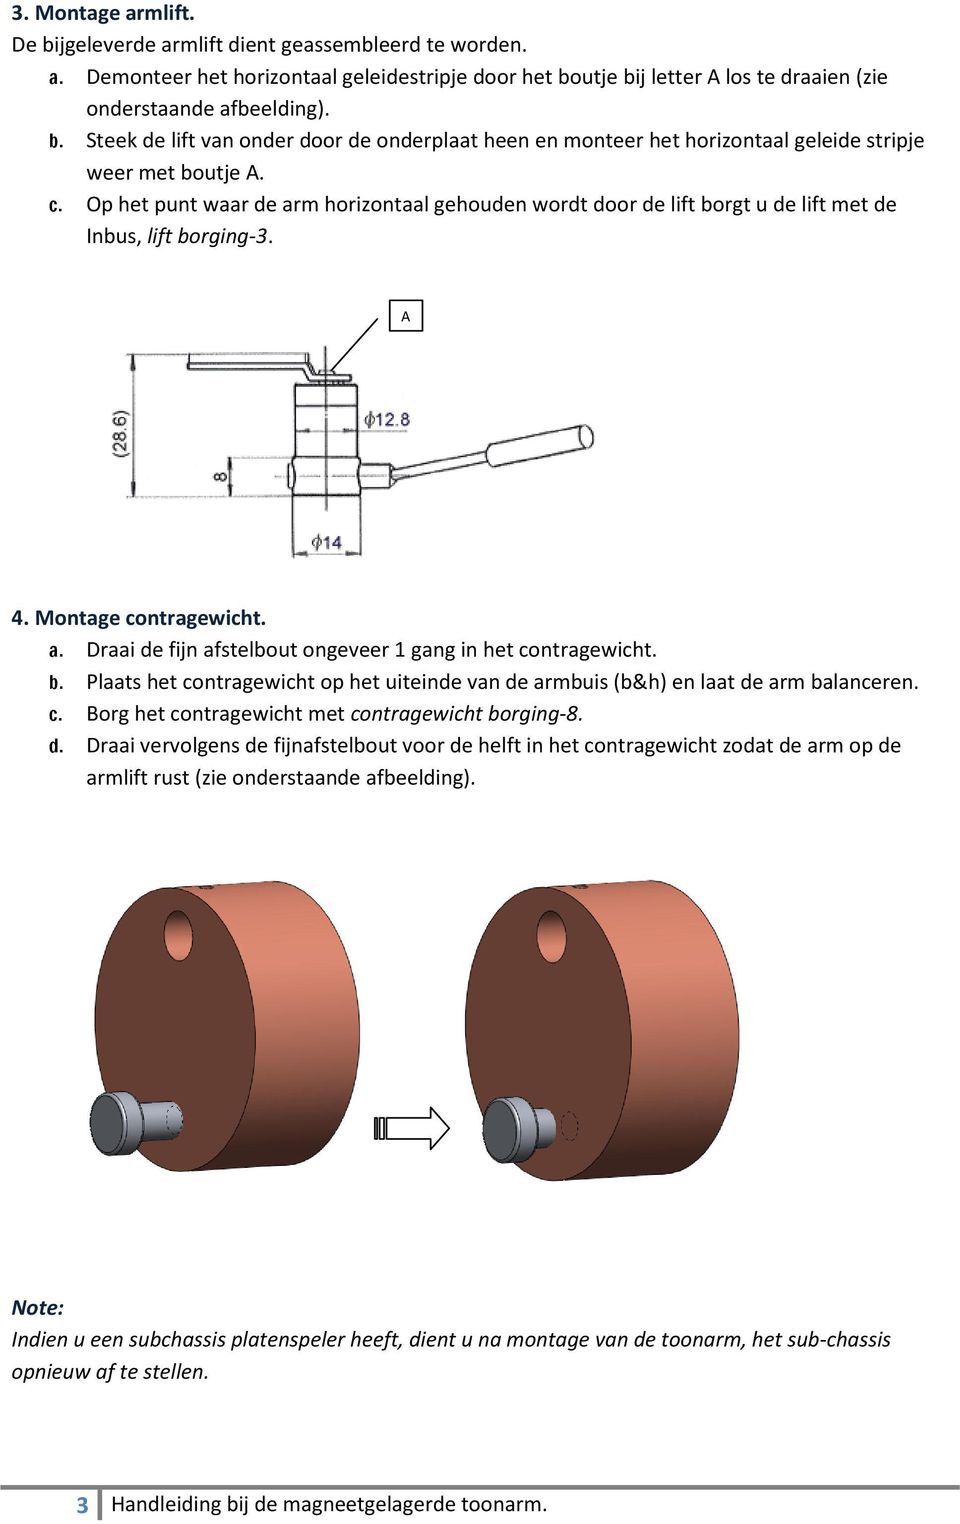 Handleiding bij de magneetgelagerde toonarm. - PDF Gratis download